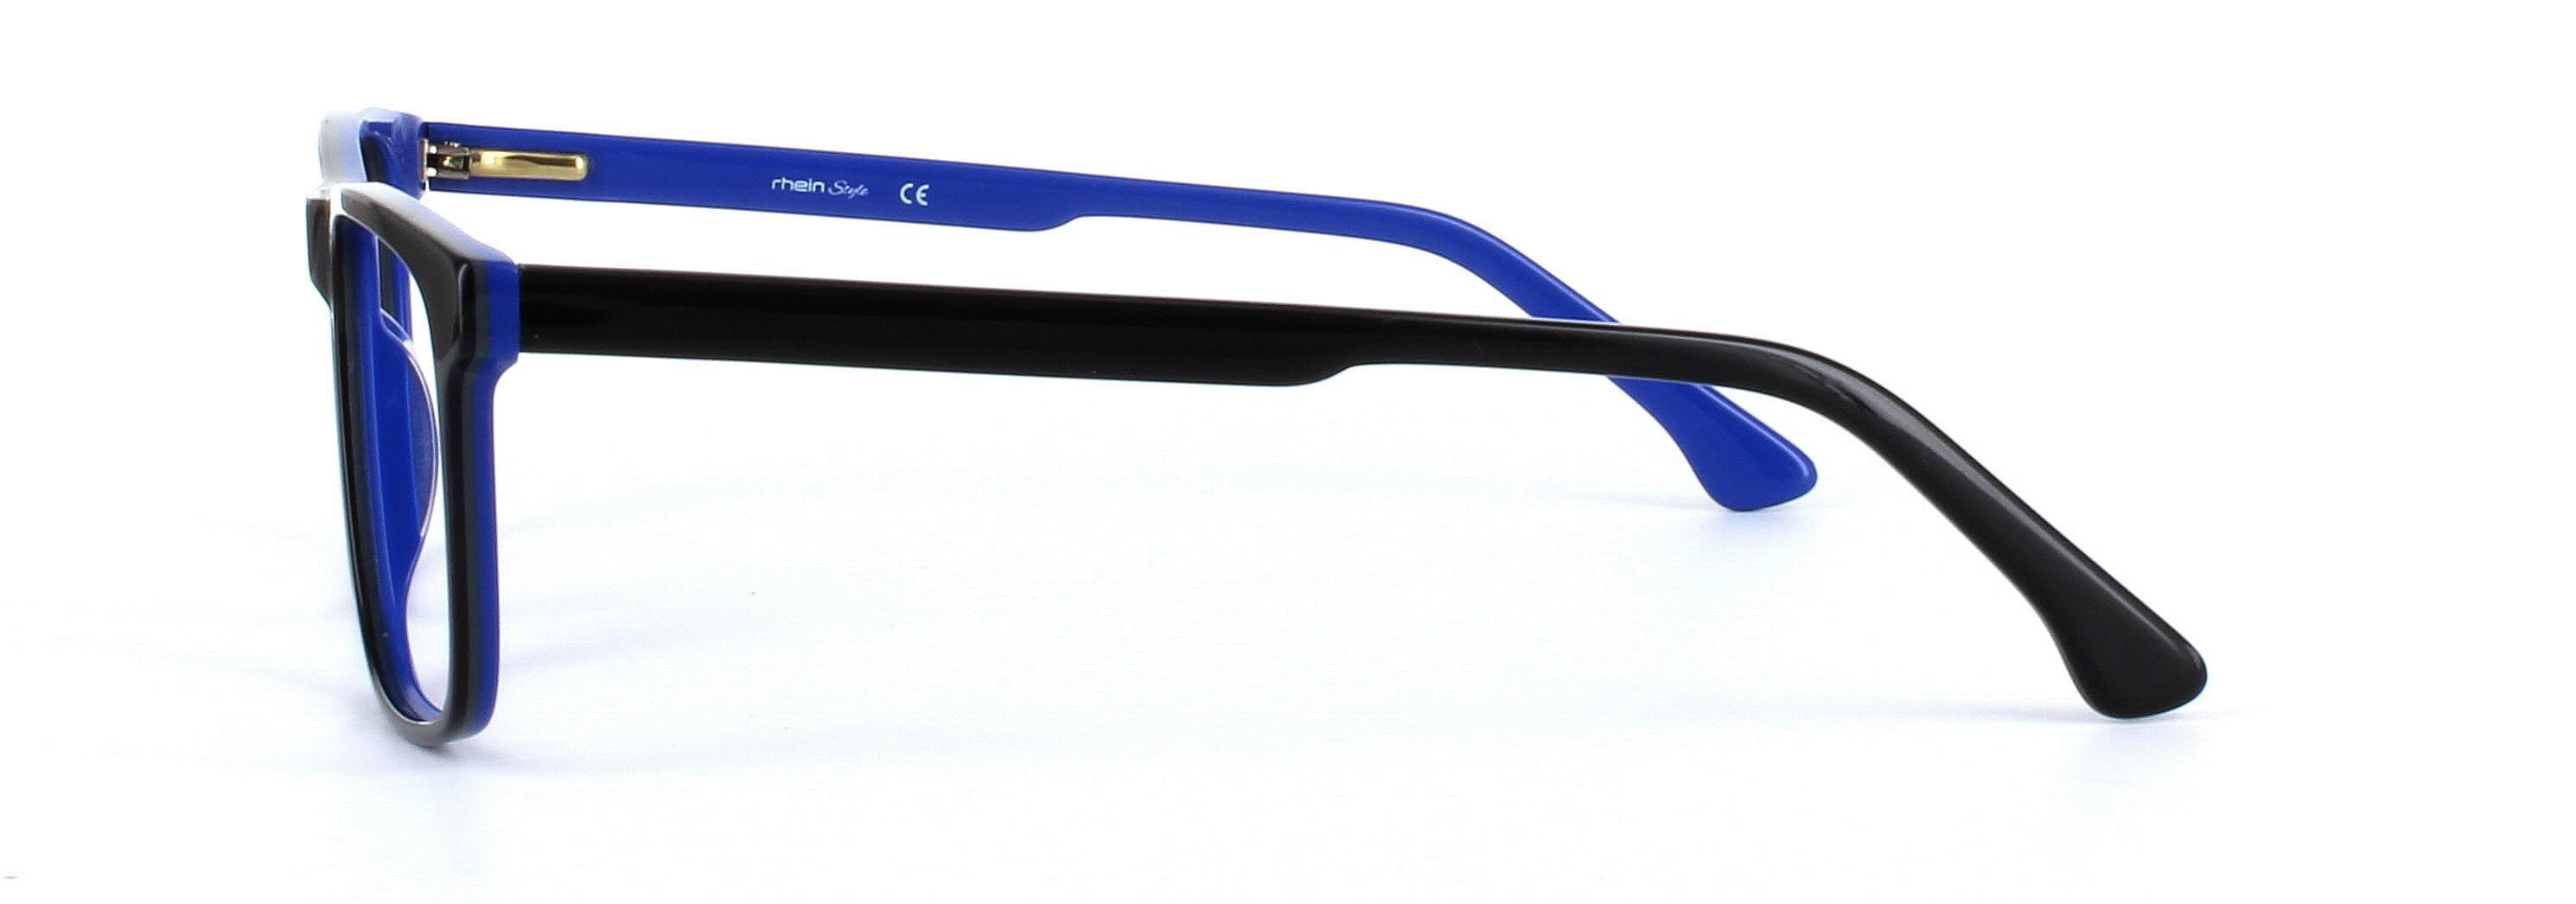 Ashington Black Full Rim Square Plastic Glasses - Image View 2